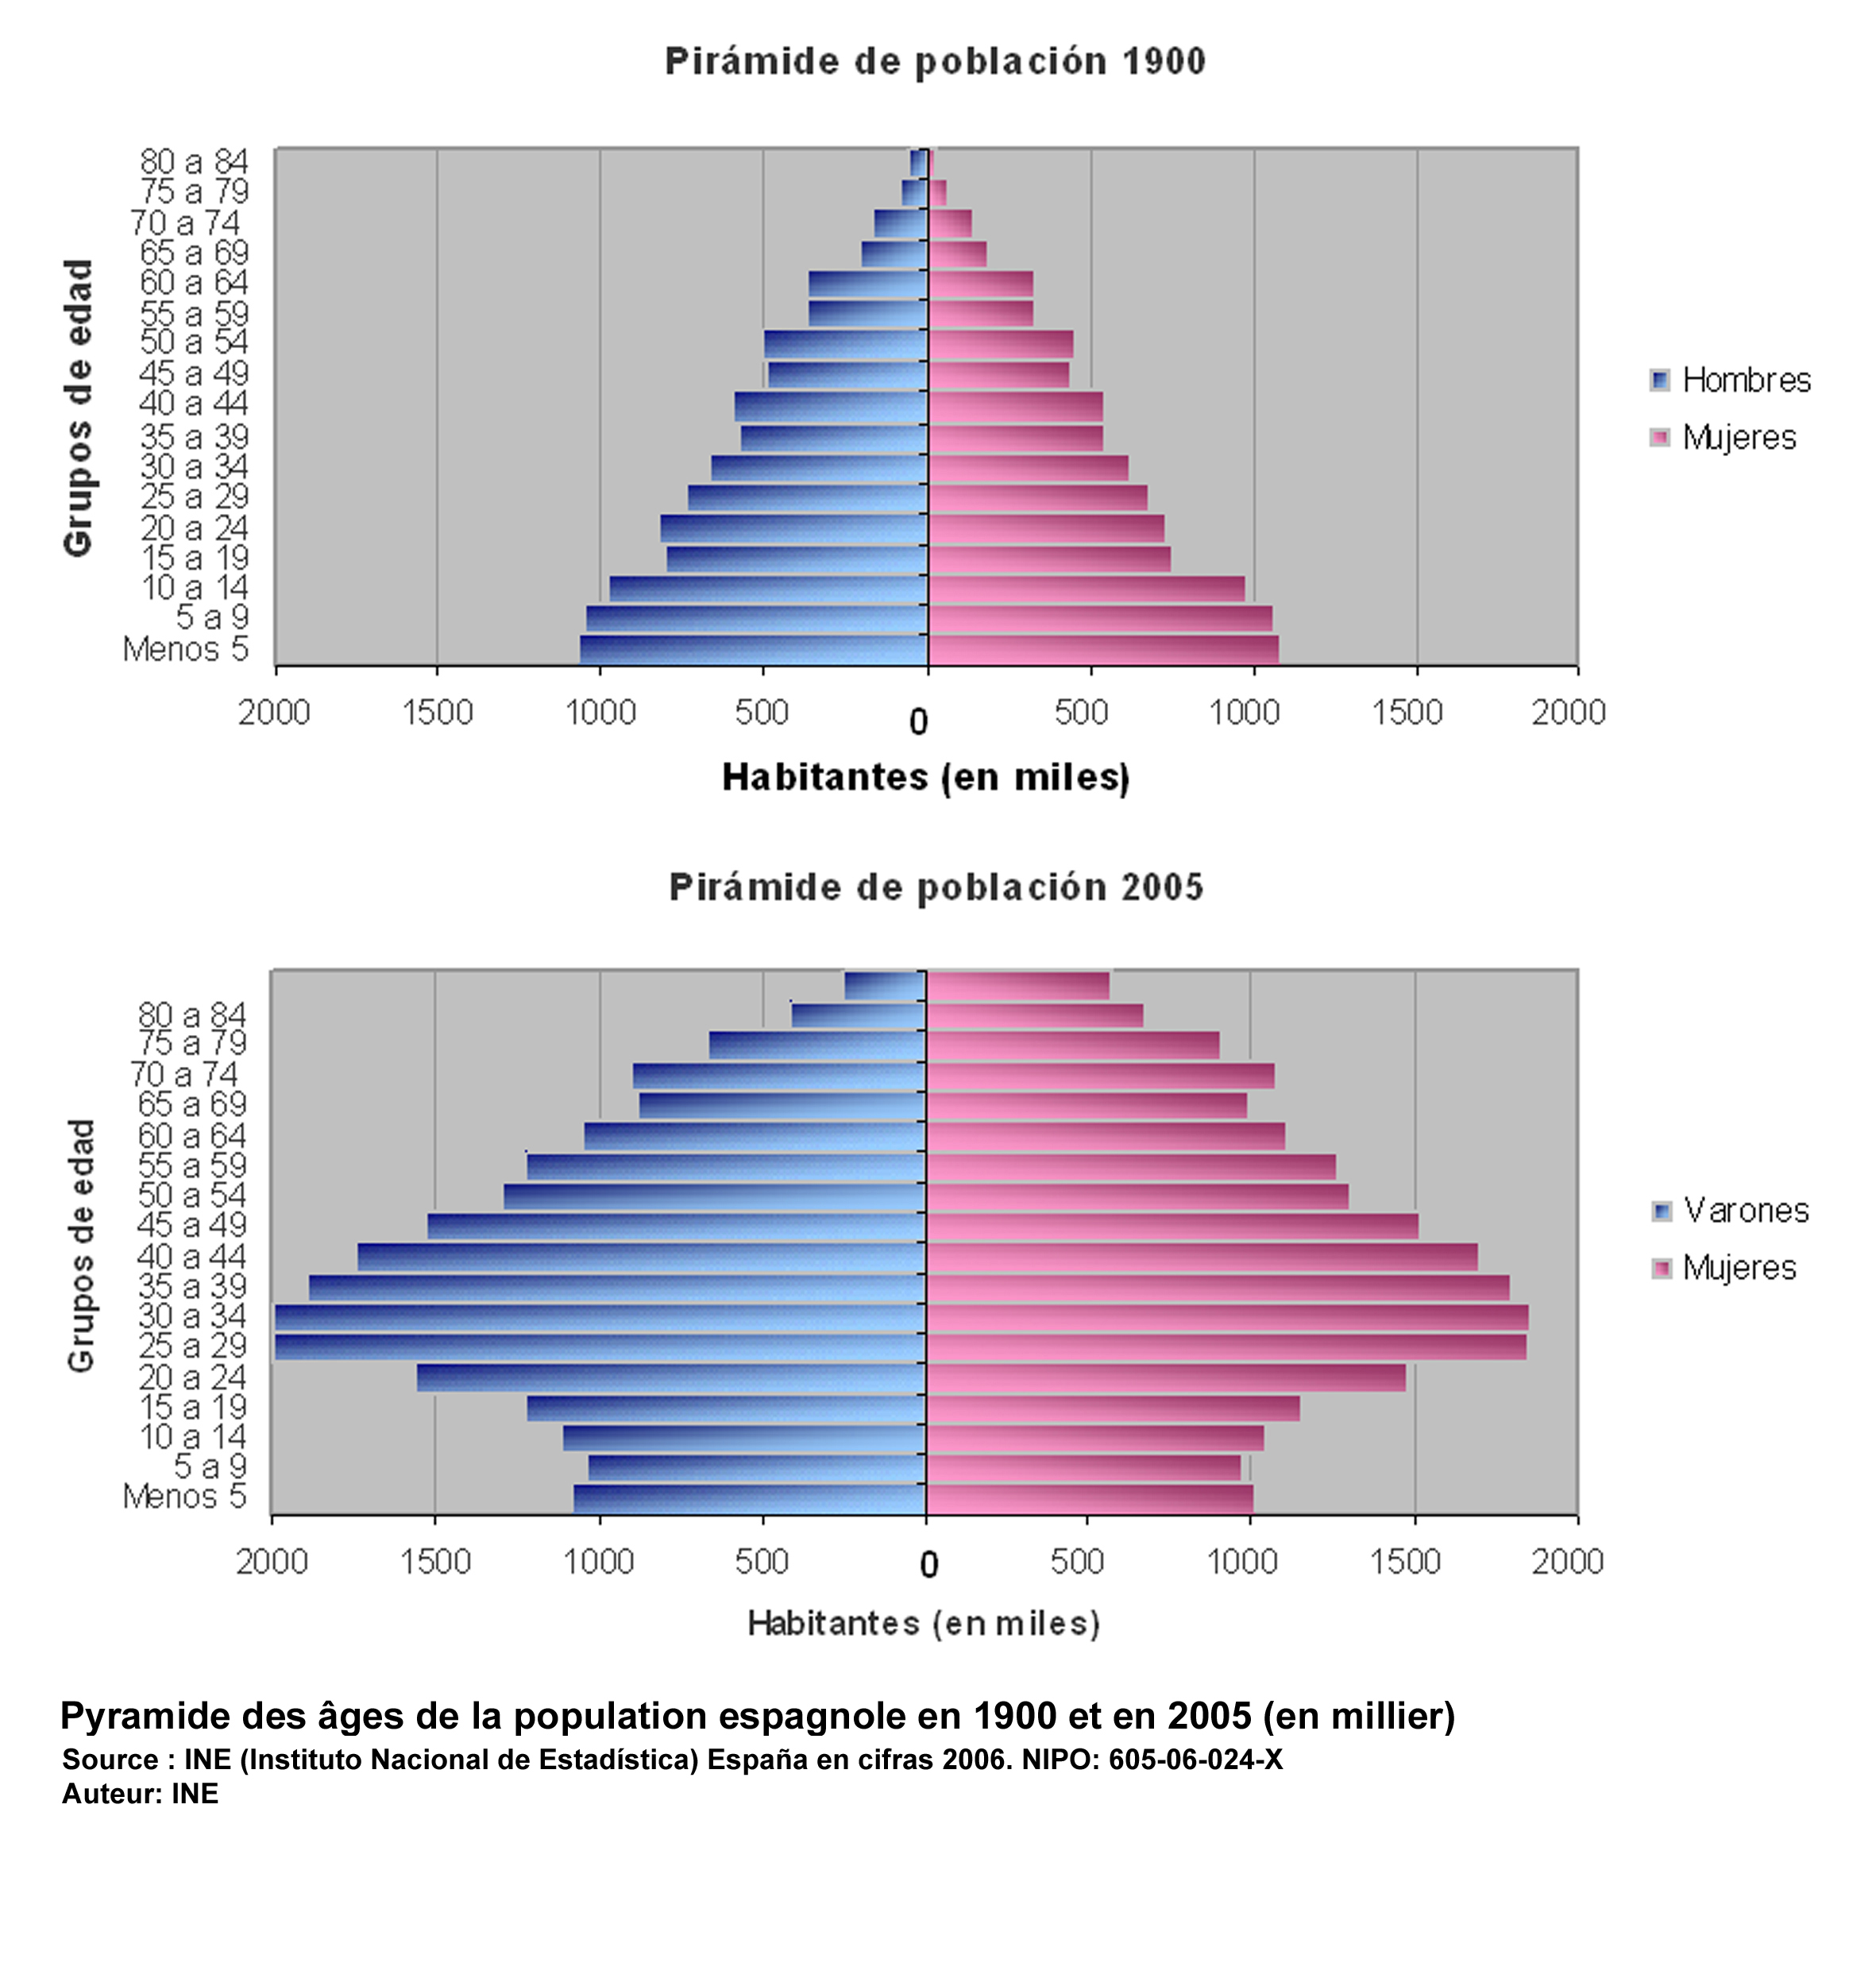 Pyramides des âges de la population espagnole en1900 et en 2005 (en millier)